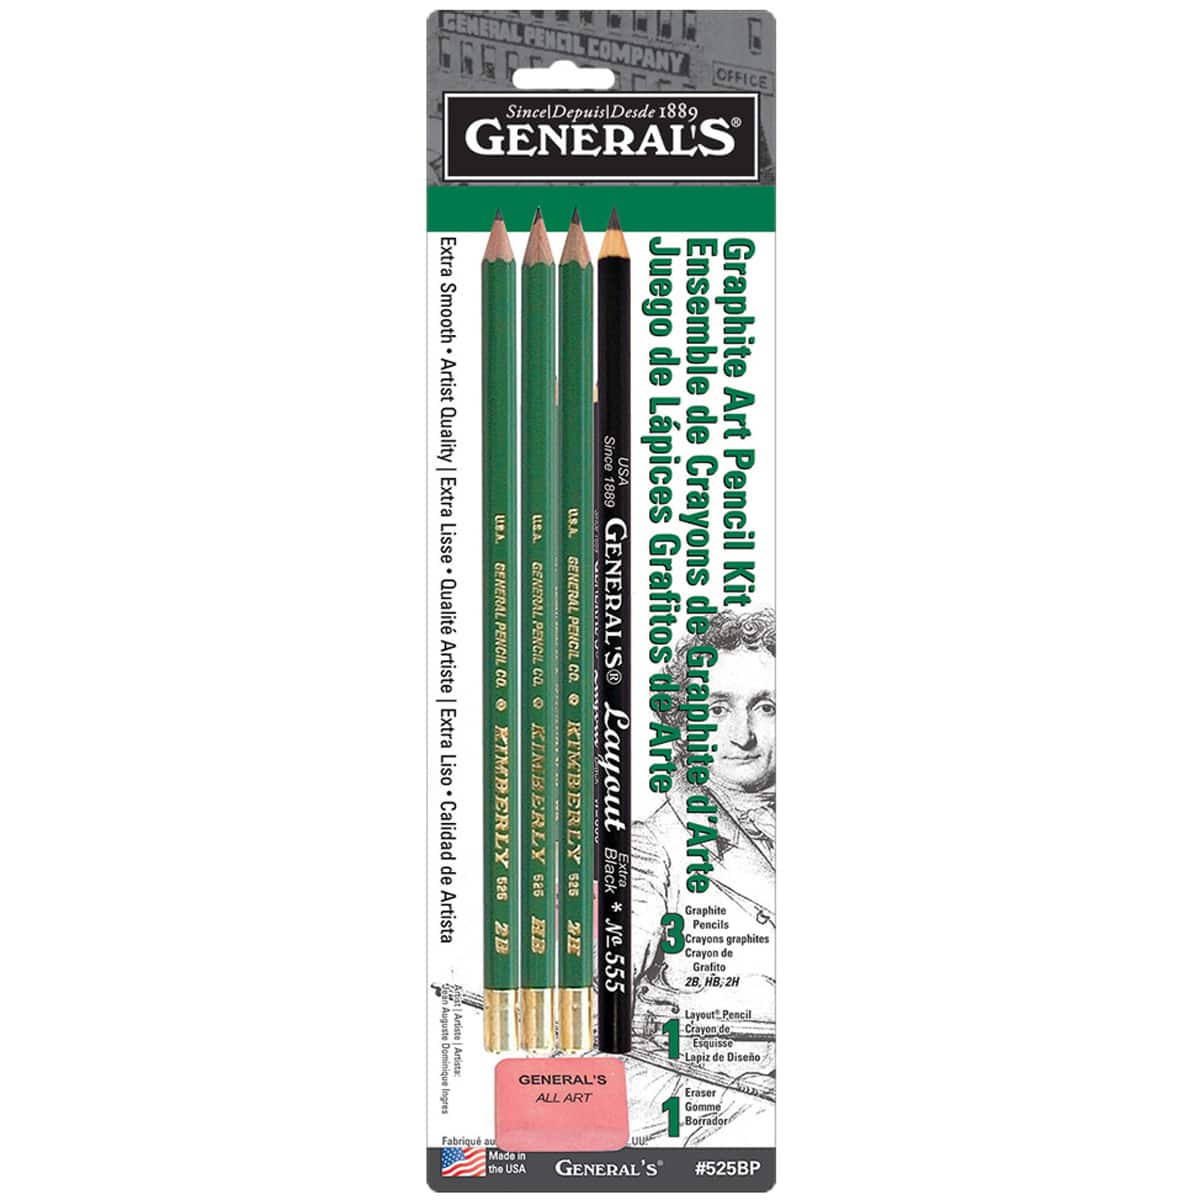 General's Drawing and Sketching Pencil Kit No. 20